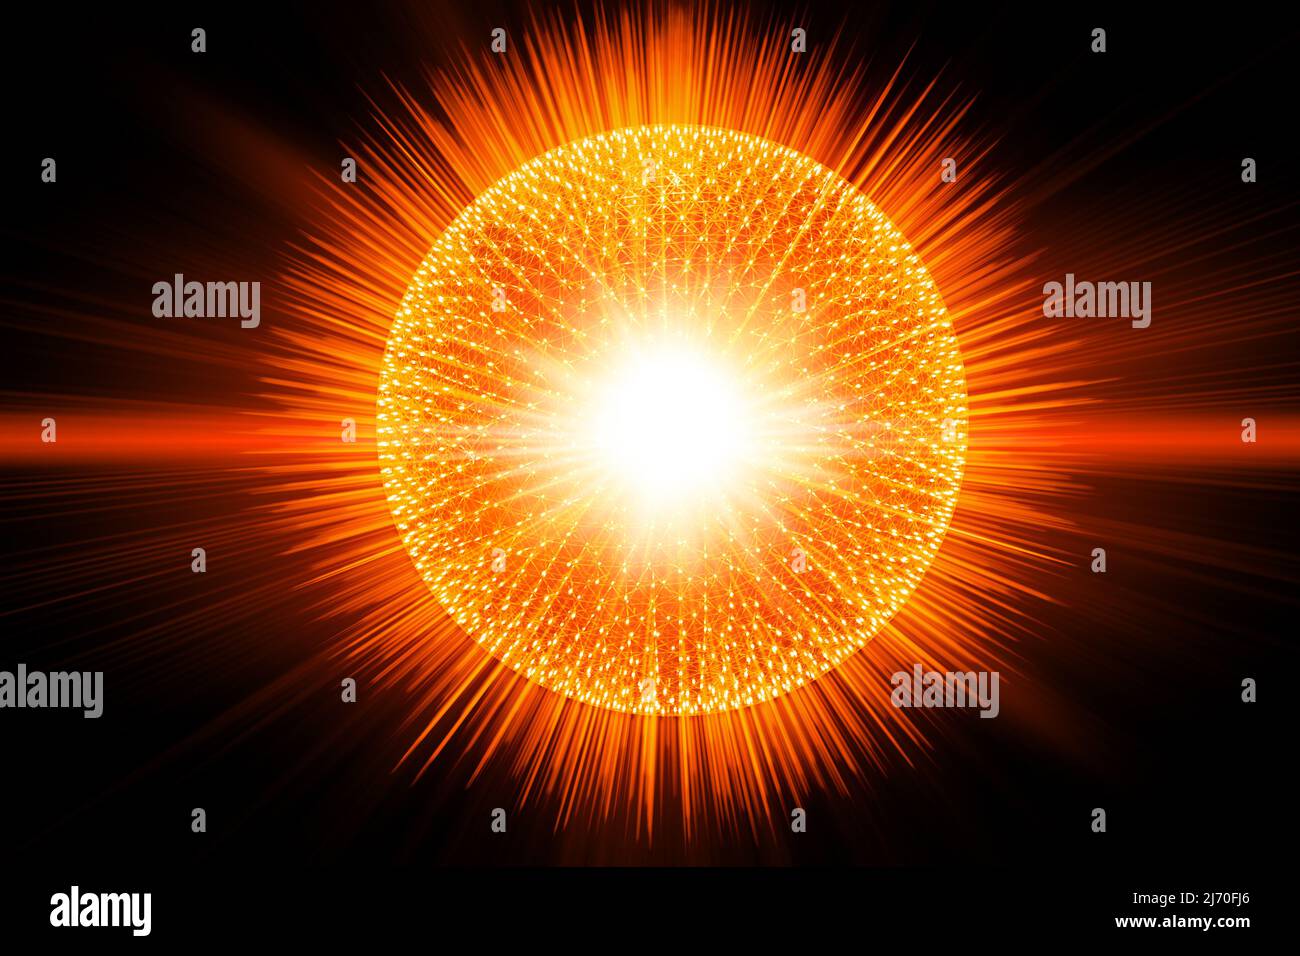 3D ILUSTRACIÓN Atom núcleo explosivo romper separación energía de liberación y radiación luz concepto de ilustración de la ciencia. Foto de stock